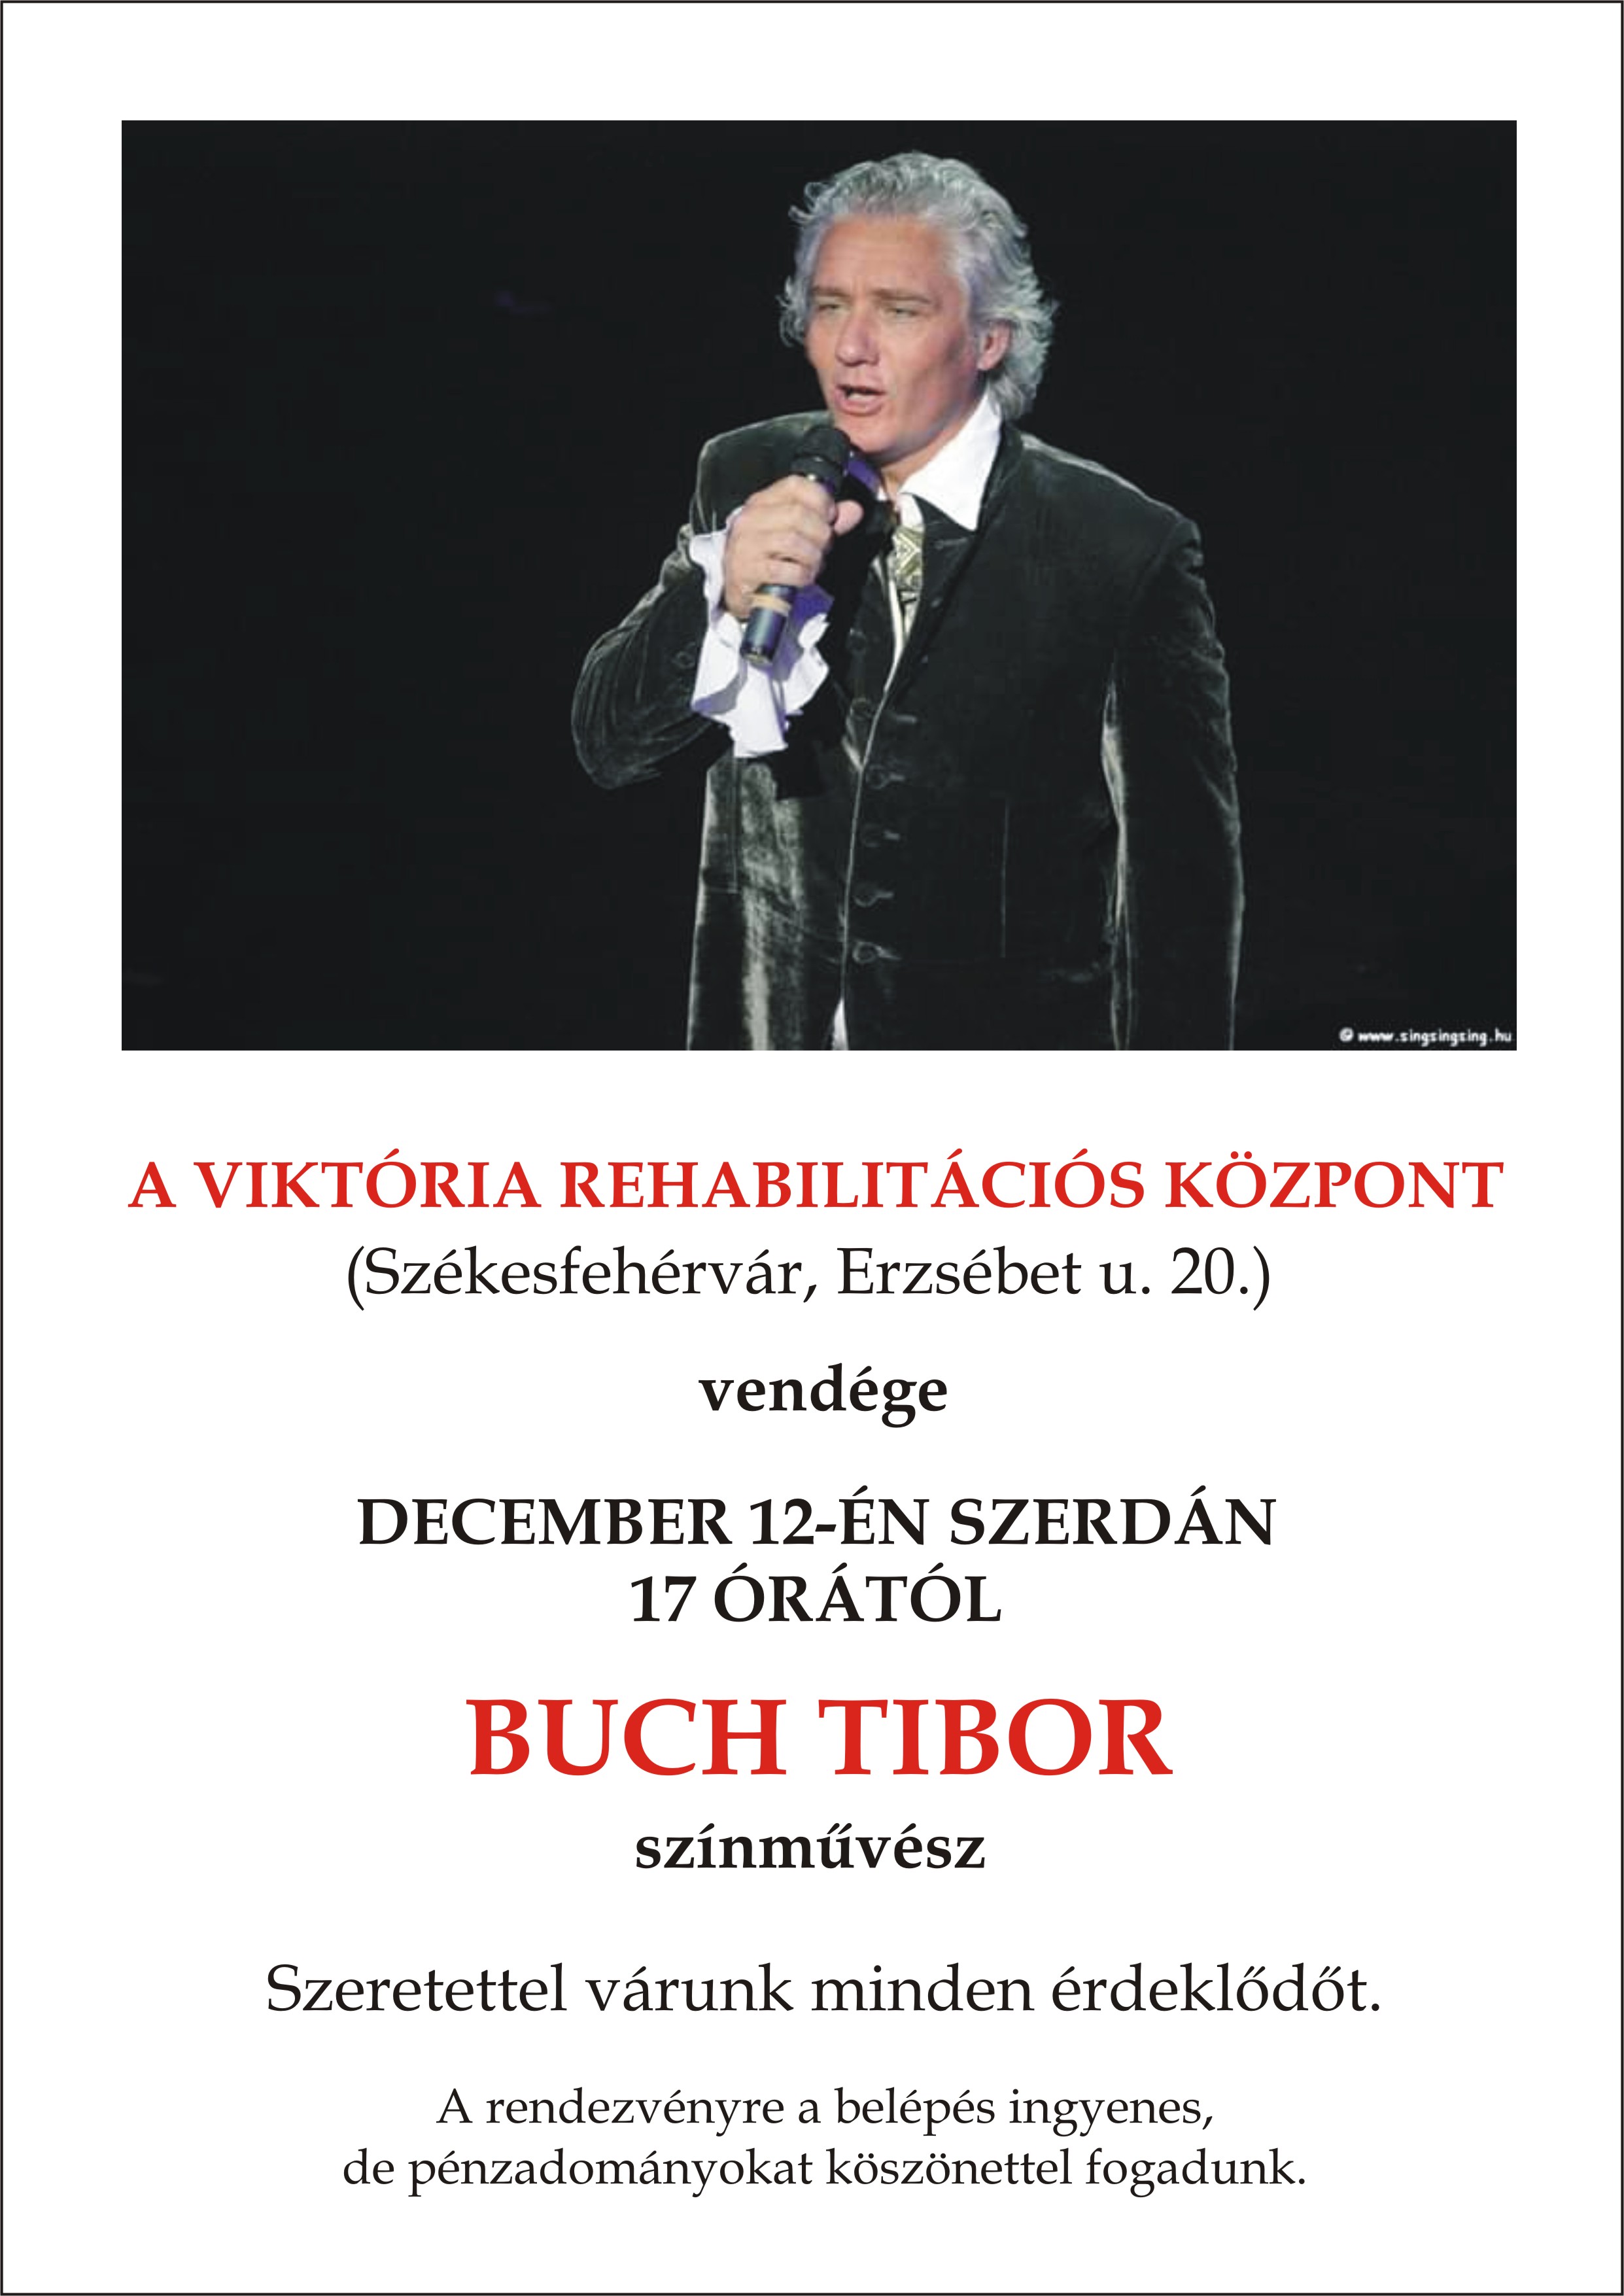 Buch Tibor lesz a Viktória Rehabilitációs Központ vendége